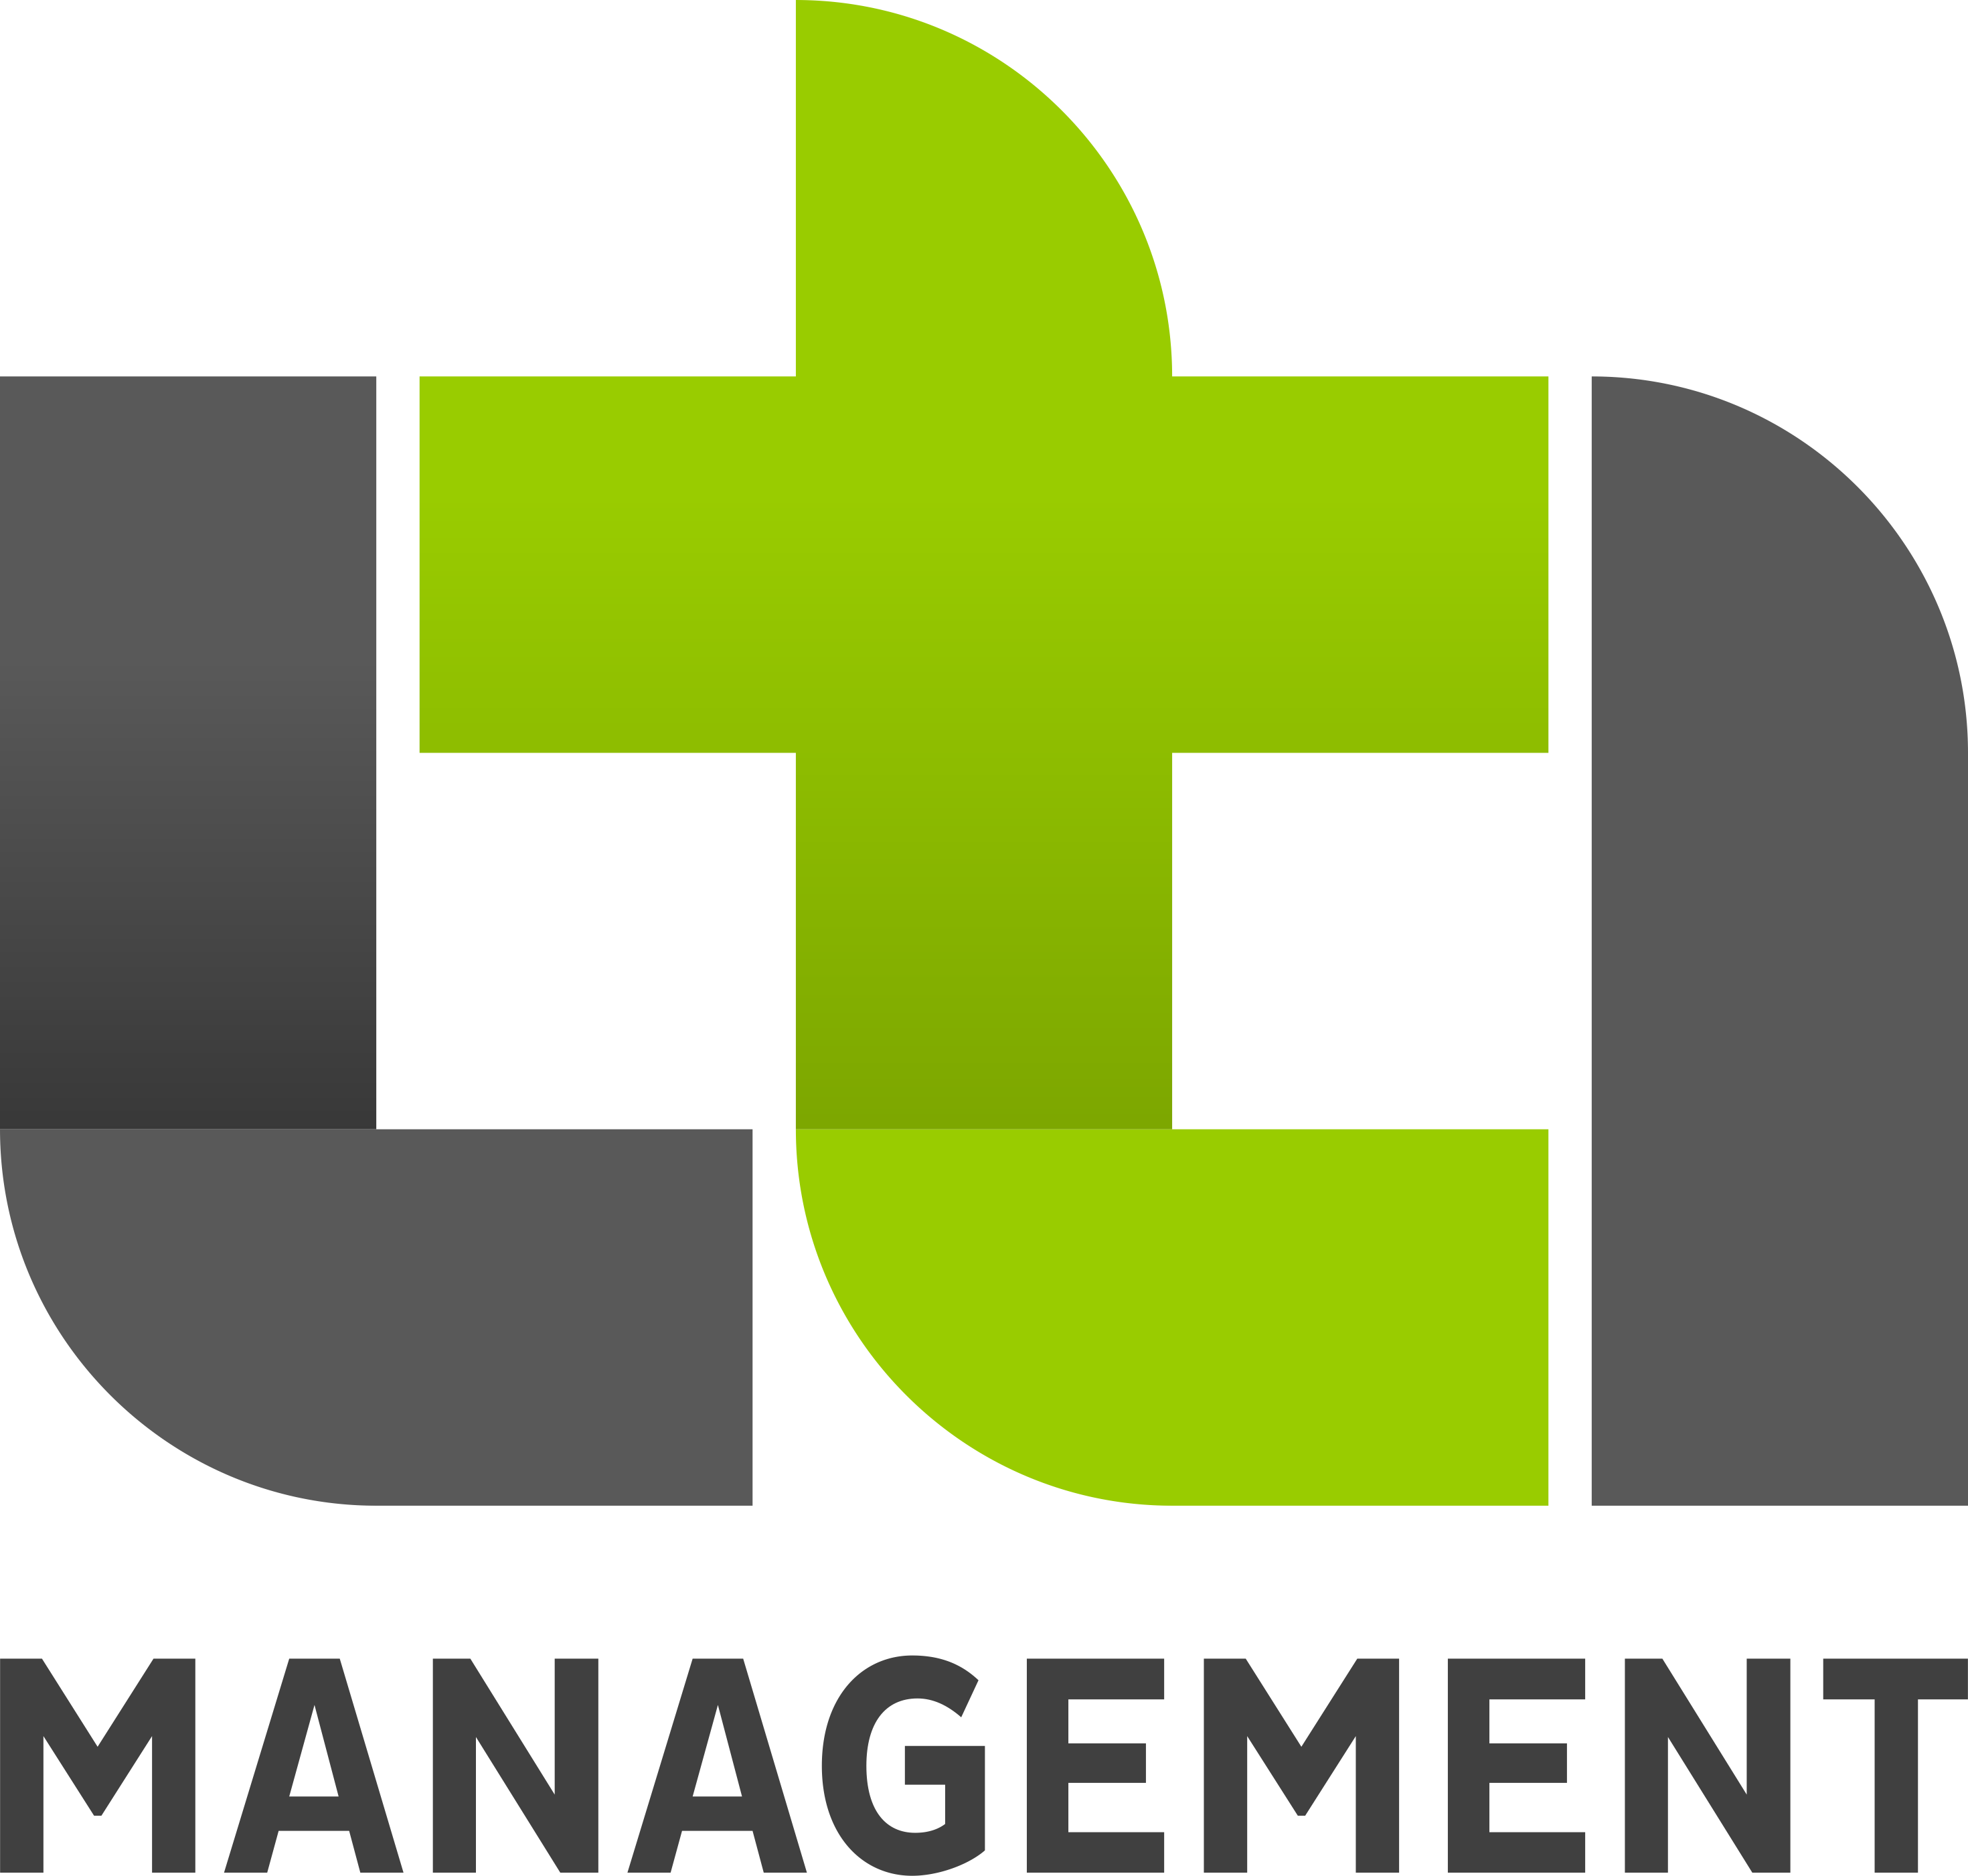 Lti Management - Business (2940x2802)